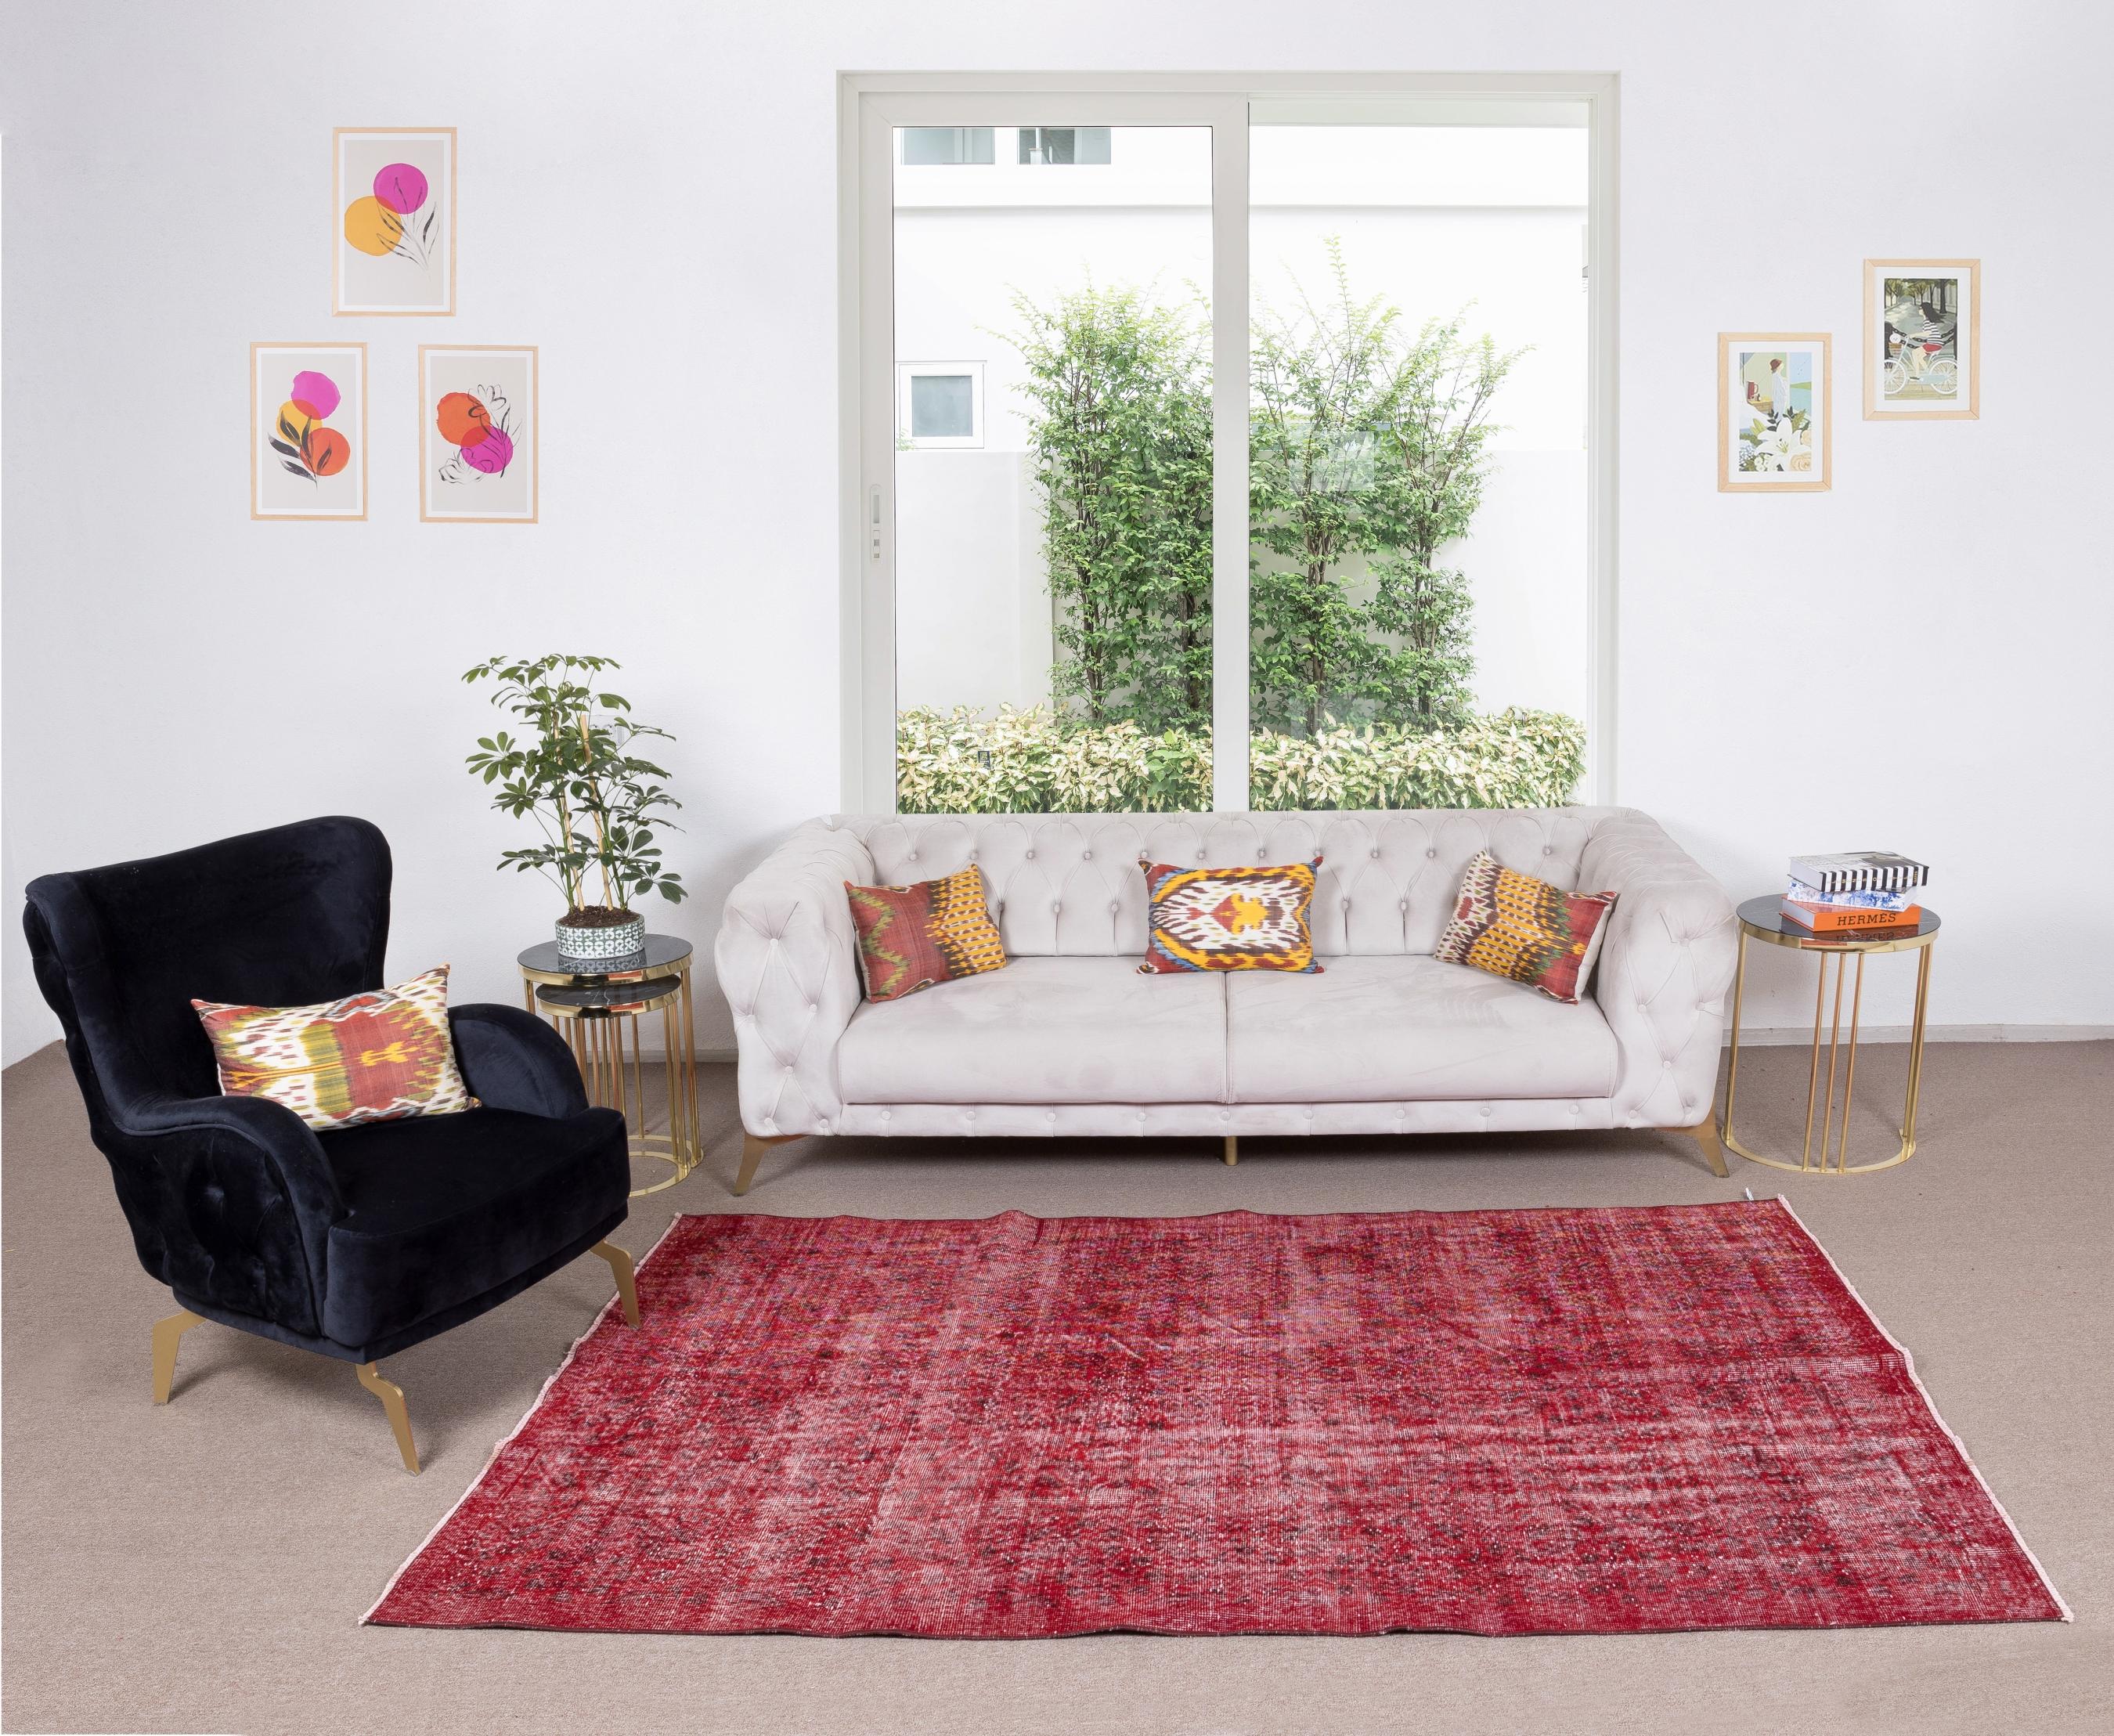 Rehaussez votre espace avec la présence audacieuse et captivante d'un tapis turc surteint en rouge. Ce tapis exquis incarne le riche héritage de l'artisanat turc, associant des techniques traditionnelles à un style contemporain pour créer un point